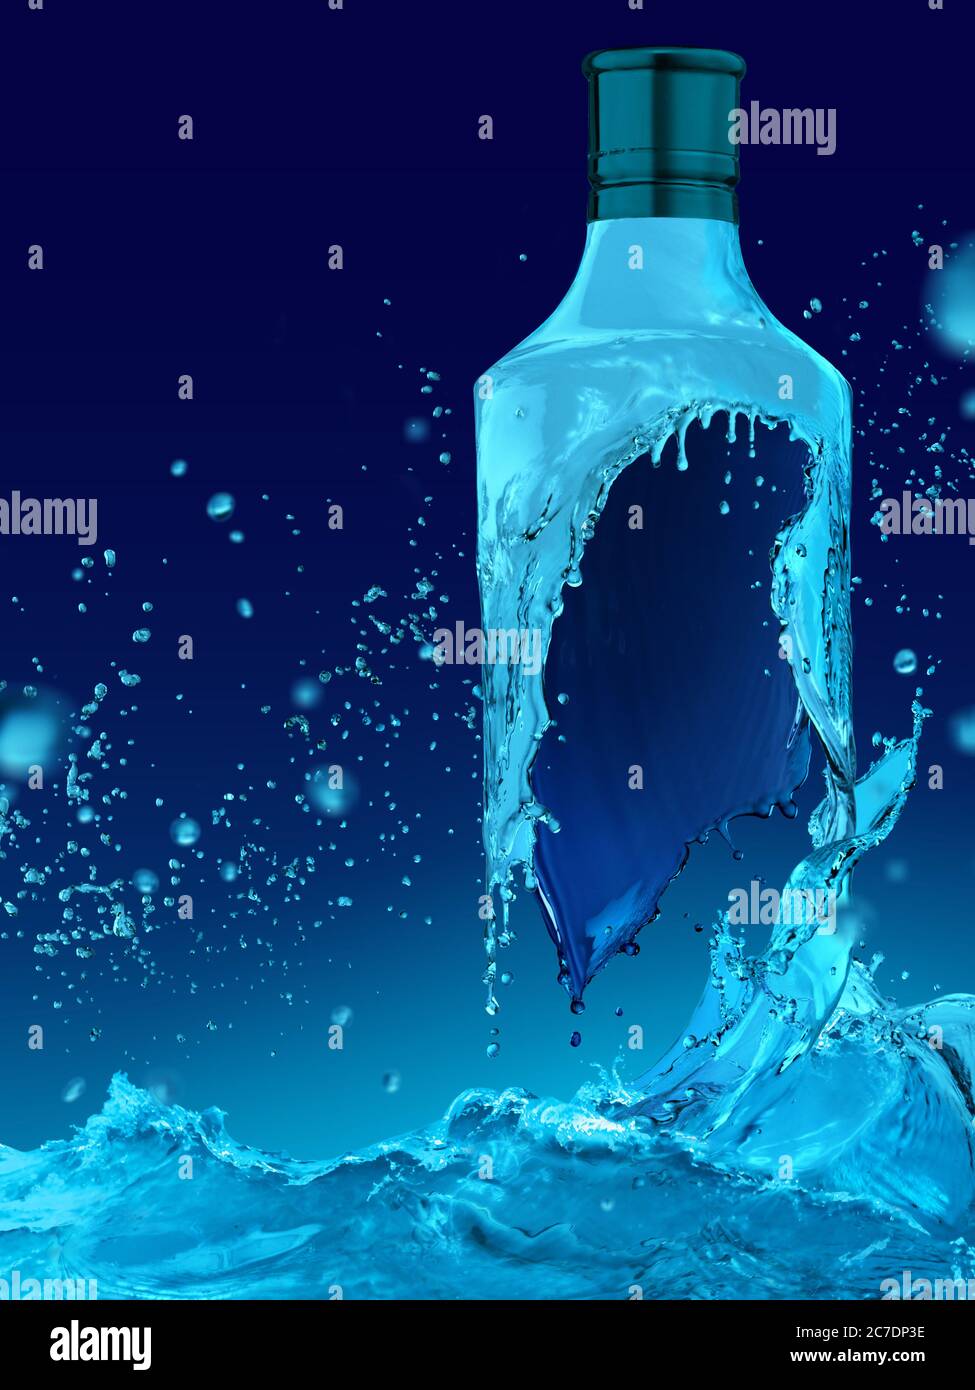 Blue Water Splash Krone Form auf Wasseroberfläche mit Bombai Wodka-Flasche isoliert, Studio-Foto in großer Größe und hoher Auflösung Stockfoto